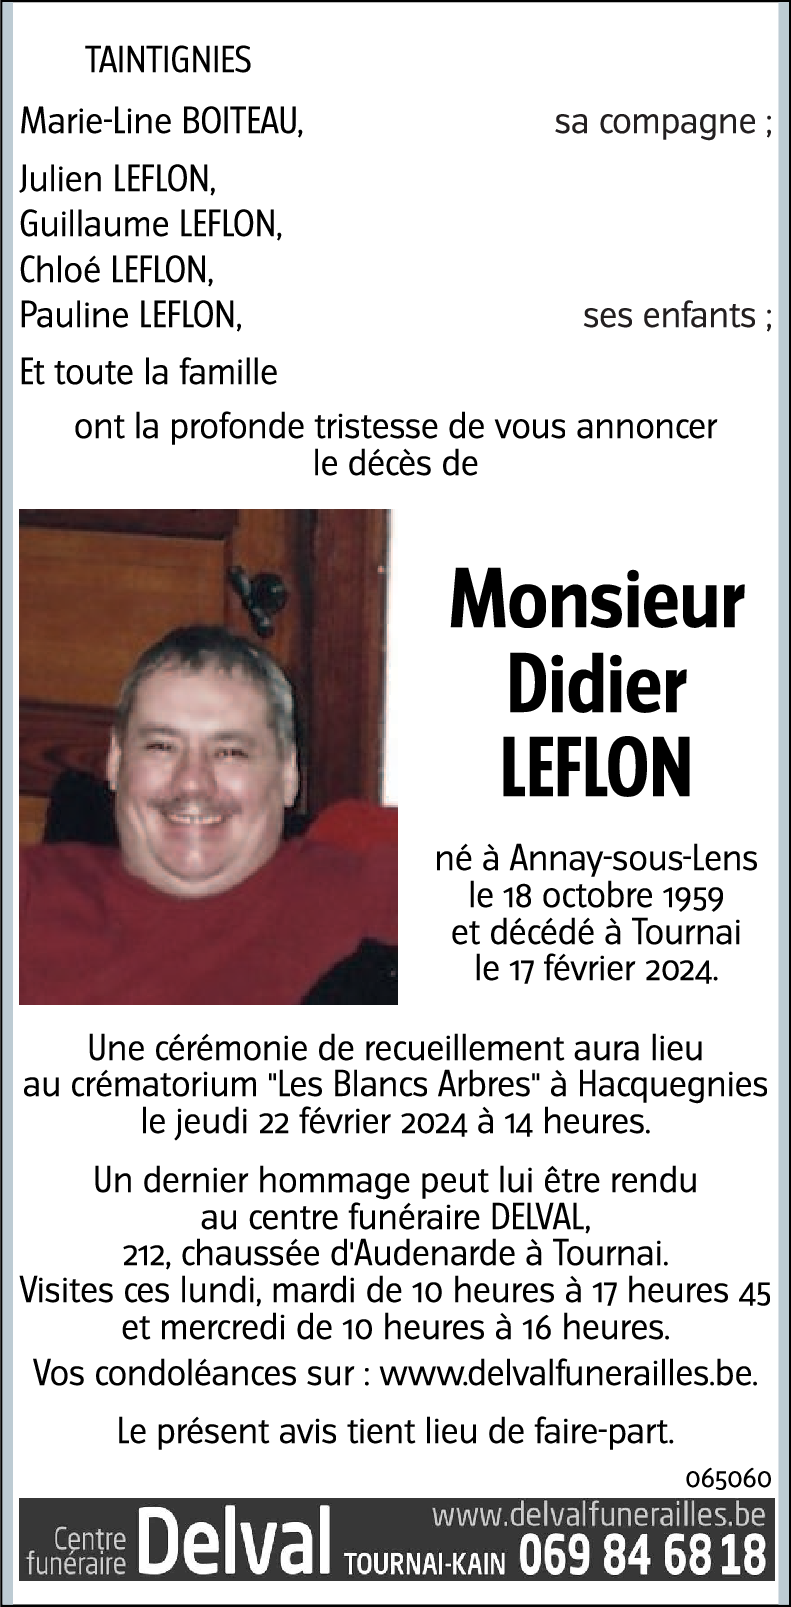 Didier Leflon